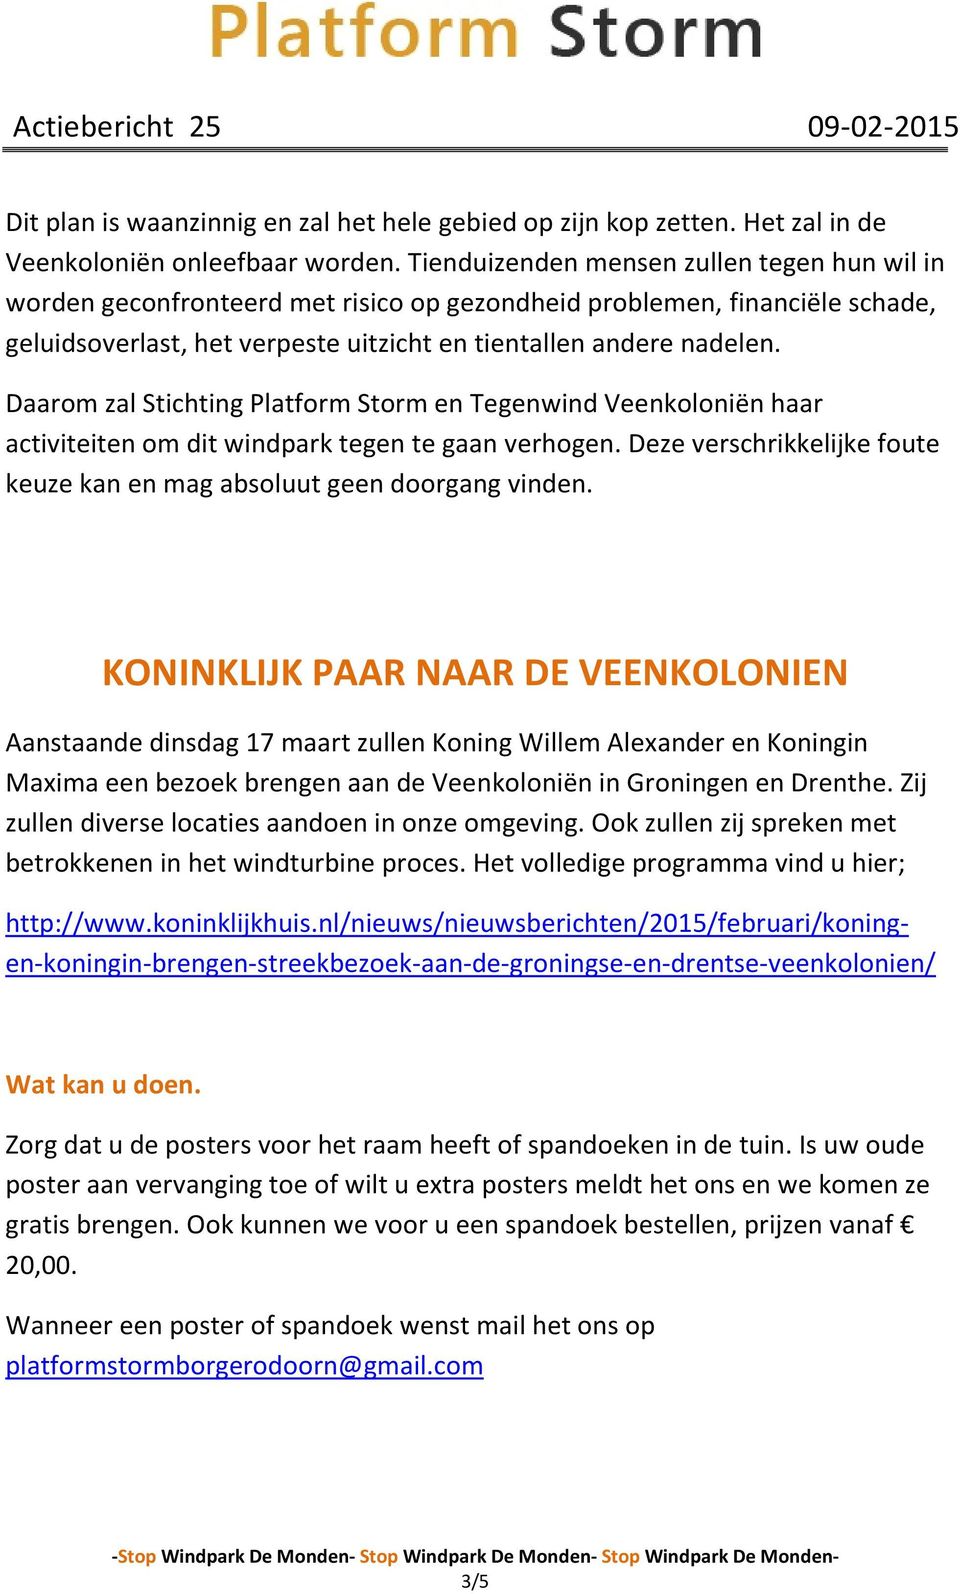 Daarom zal Stichting Platform Storm en Tegenwind Veenkoloniën haar activiteiten om dit windpark tegen te gaan verhogen. Deze verschrikkelijke foute keuze kan en mag absoluut geen doorgang vinden.